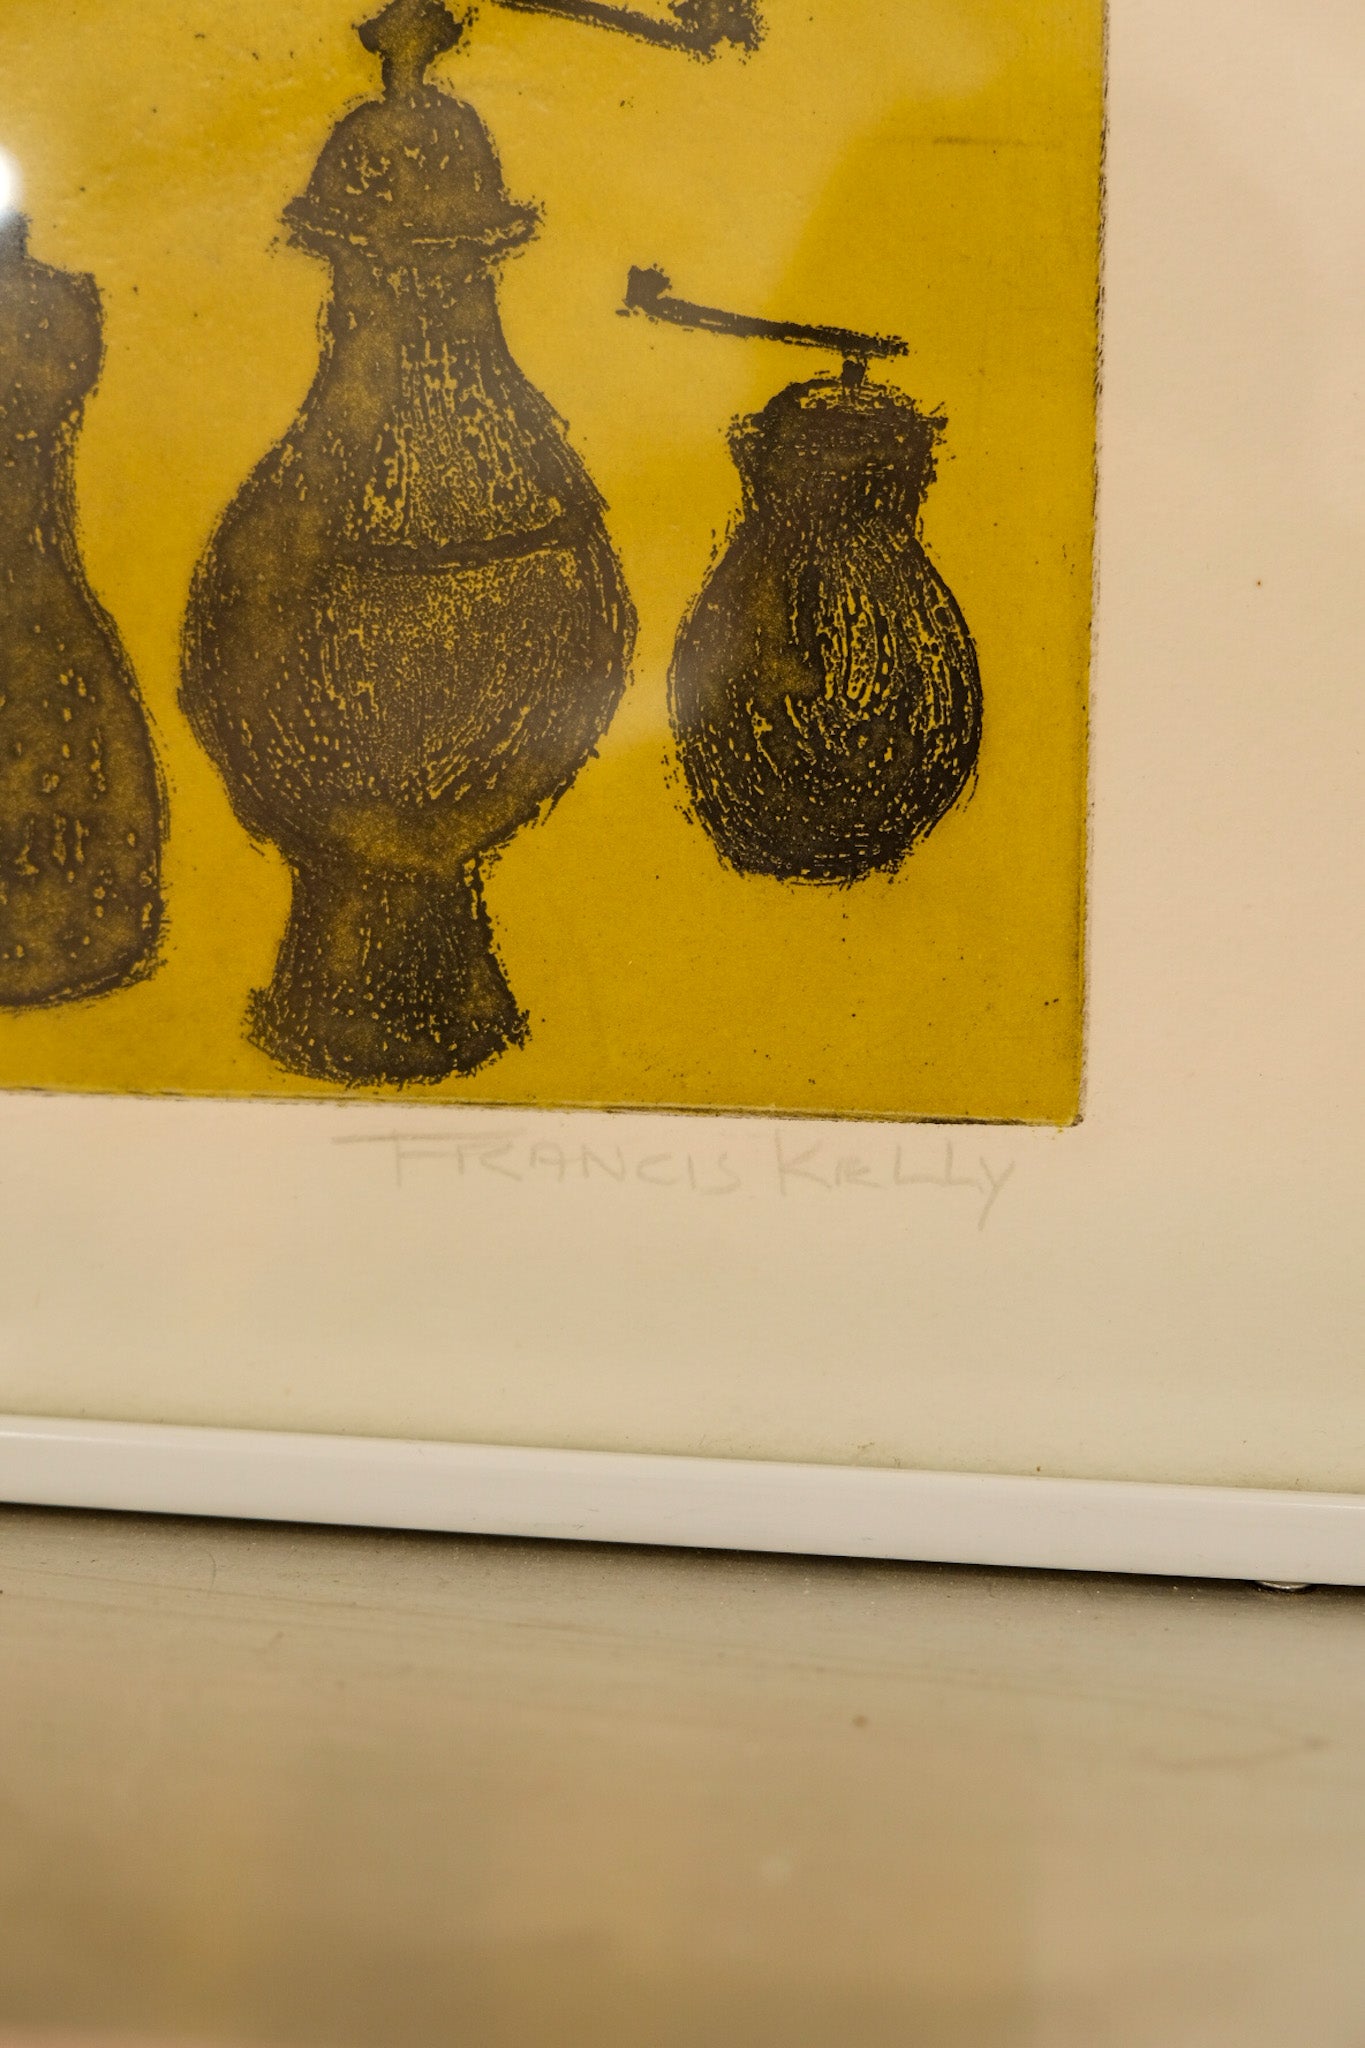 Francis Kelly Pepper Grinder Signed Framed Print